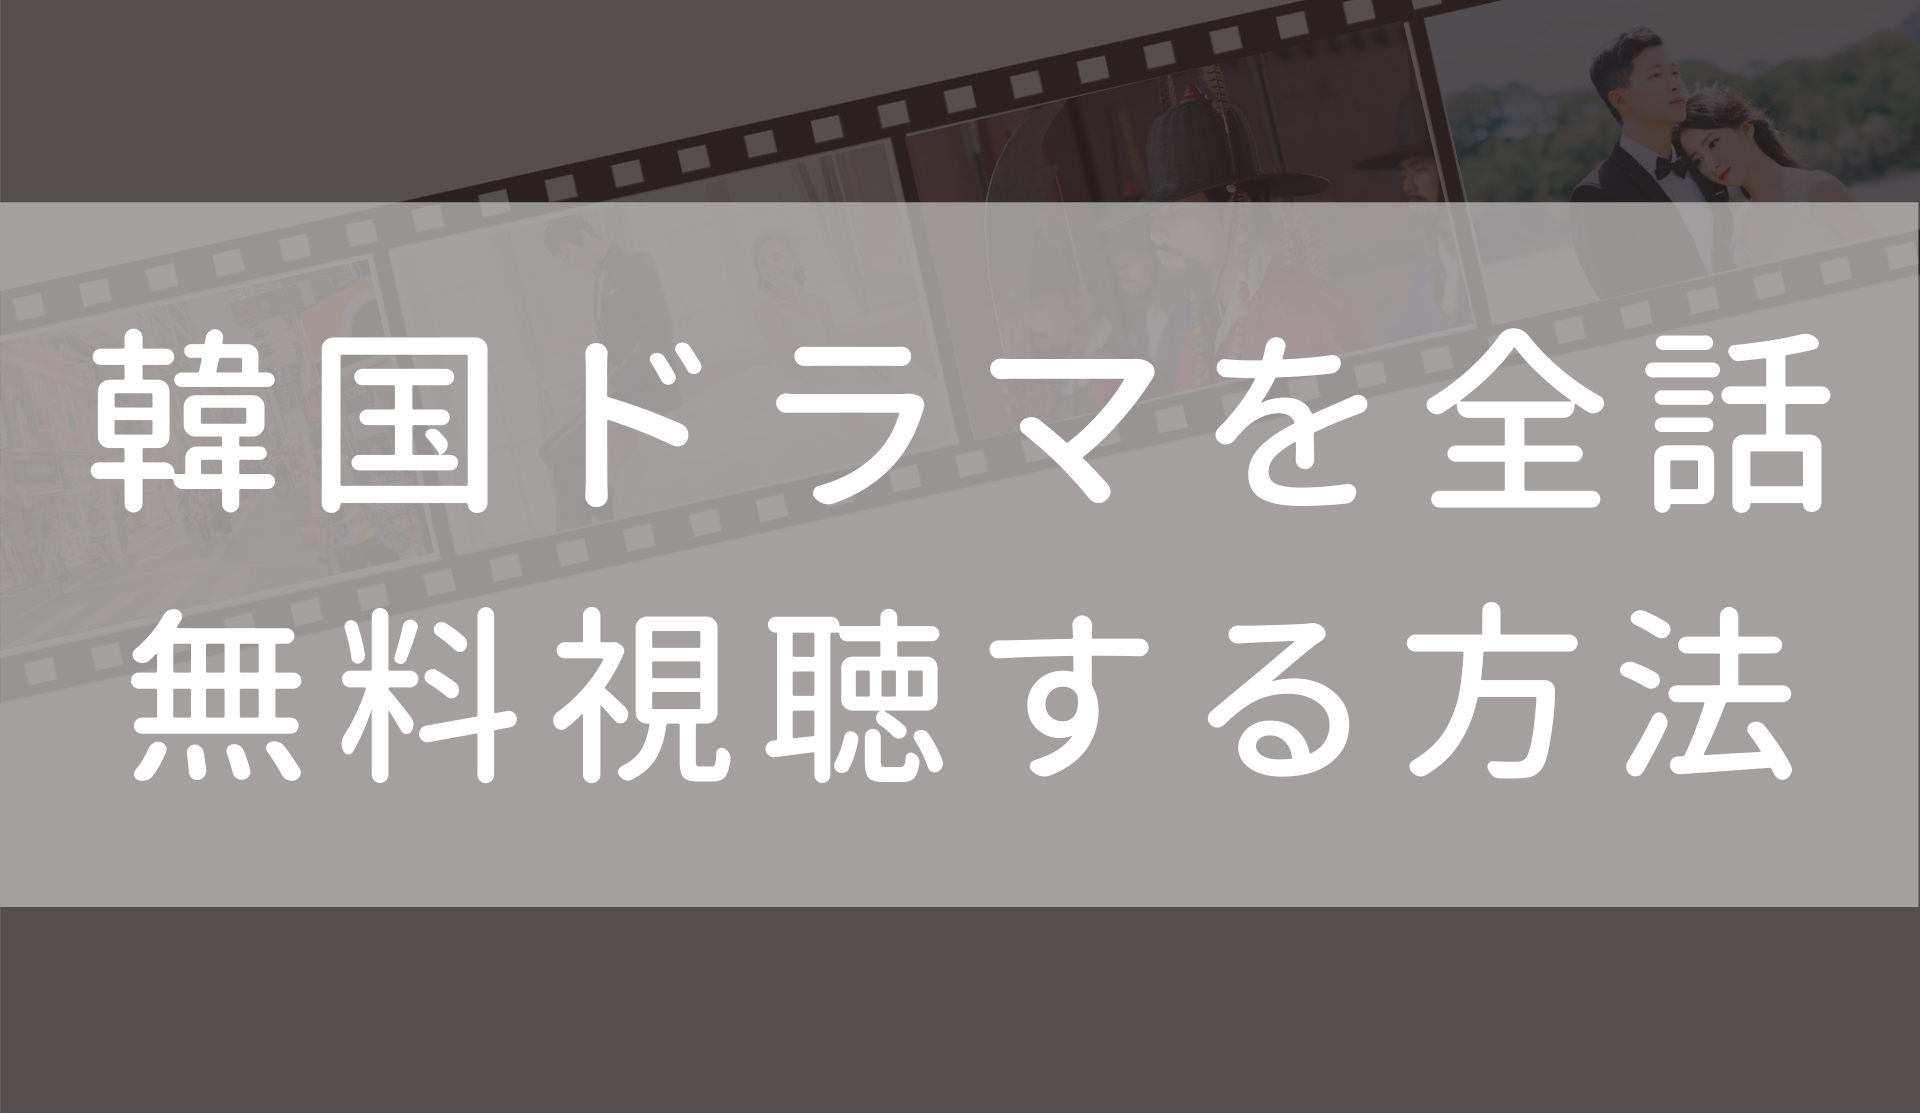 私のidはカンナム美人 日本語字幕 吹き替え 動画を全話無料で合法に視聴する方法まとめ Fuku Hack Times